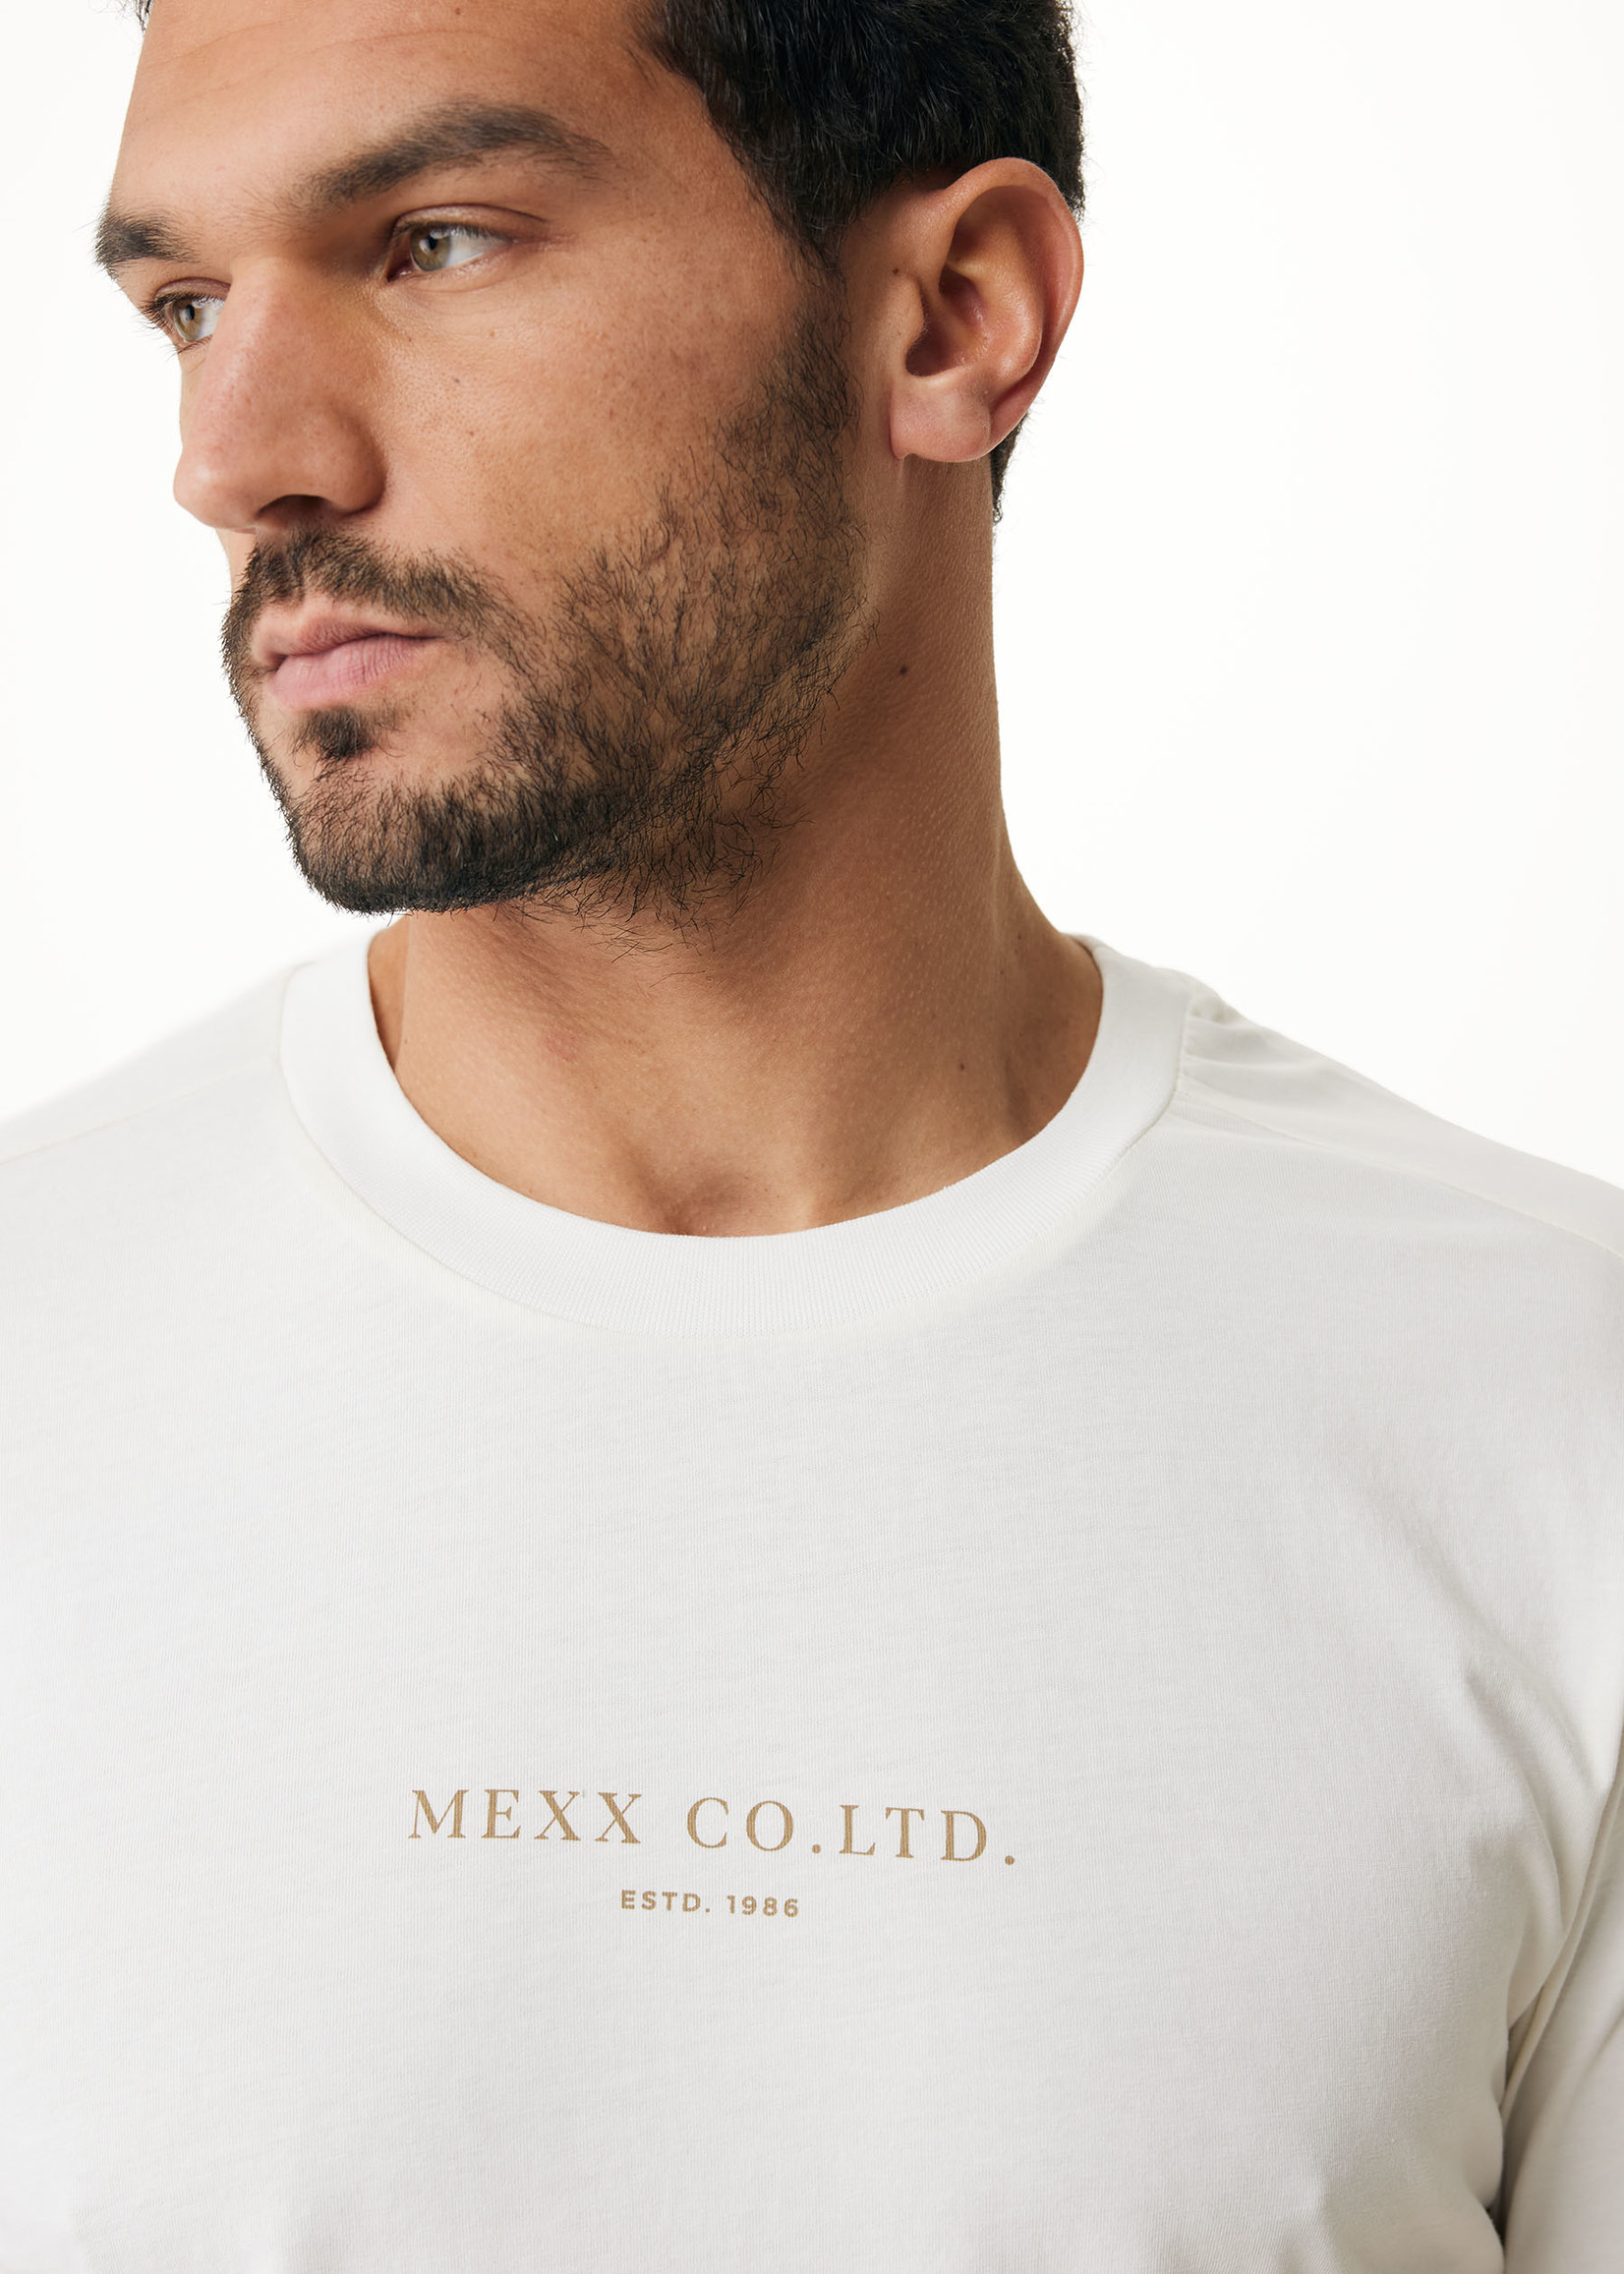 Mexx T-shirt Chest Print - Offwhite